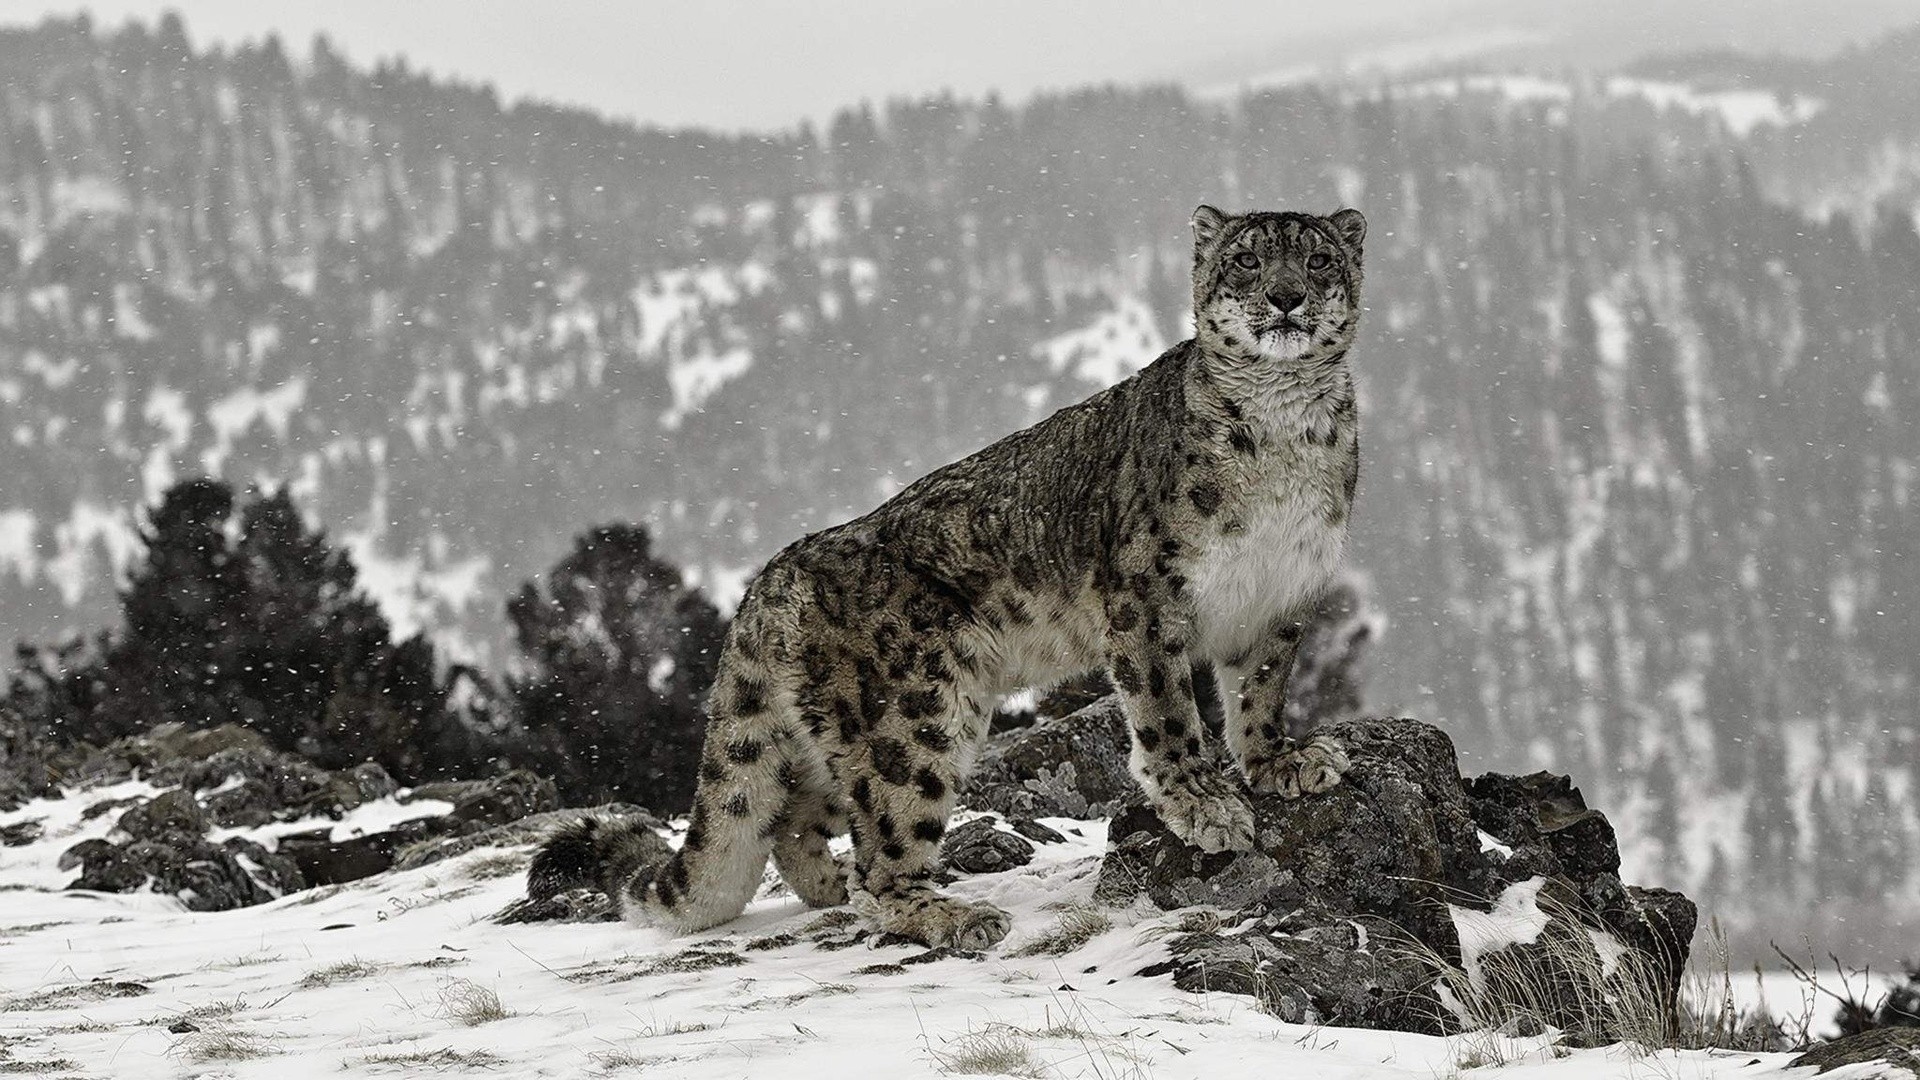 Snow Leopard Picture